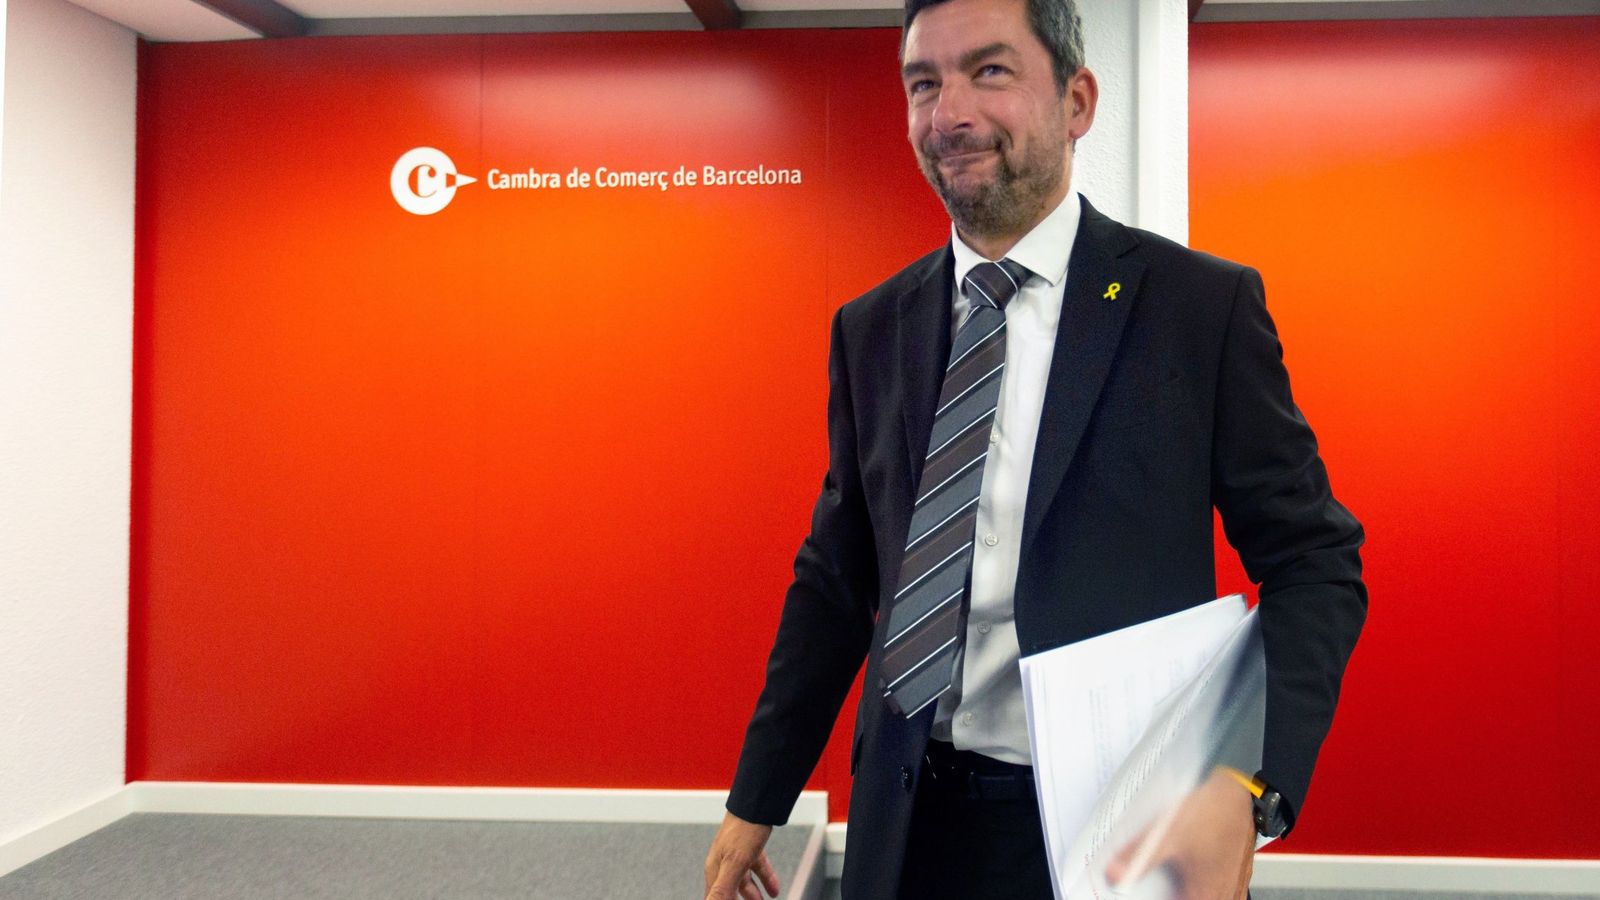 Foto: El presidente de la Cámara de Comercio de Barcelona, Joan Canadell. (EFE)